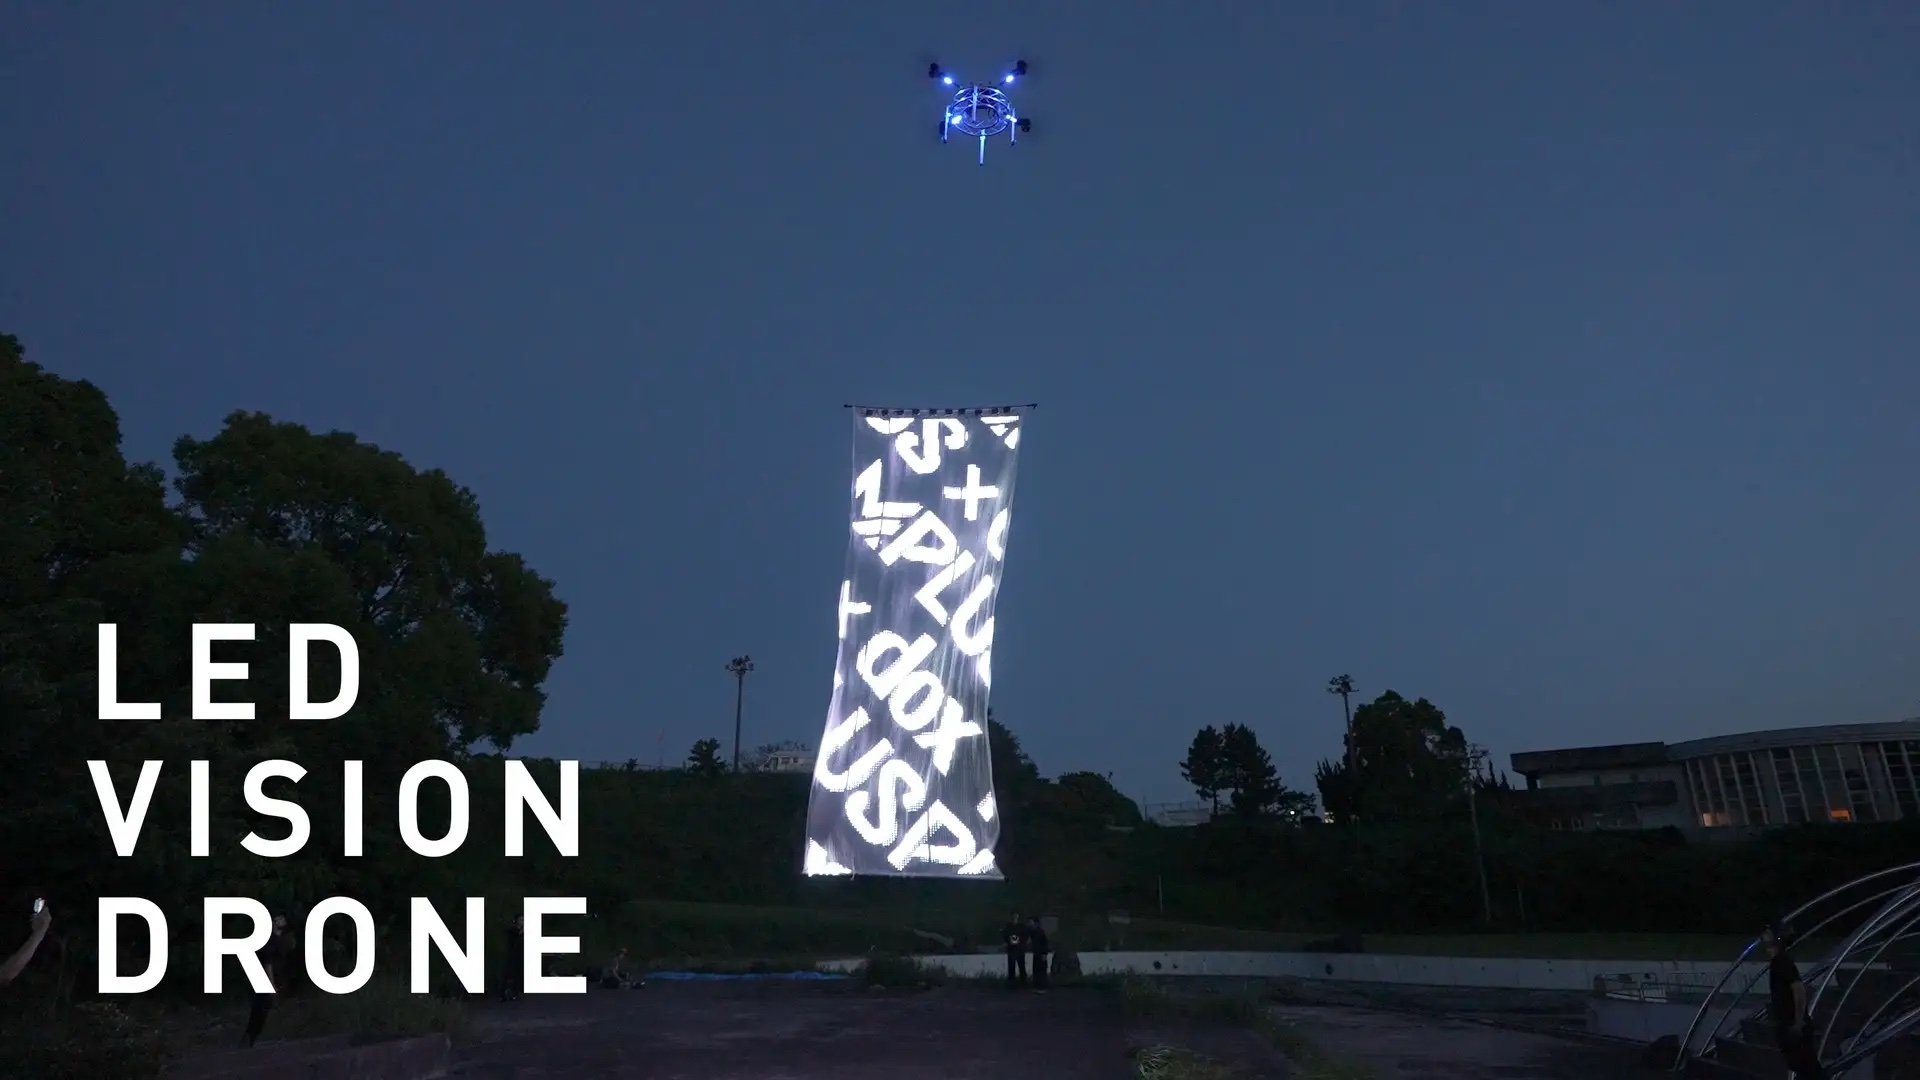 ドローンで空飛ぶスクリーンを実現、ダイナミックな映像表現が可能─「LED VISION DRONE」を開発